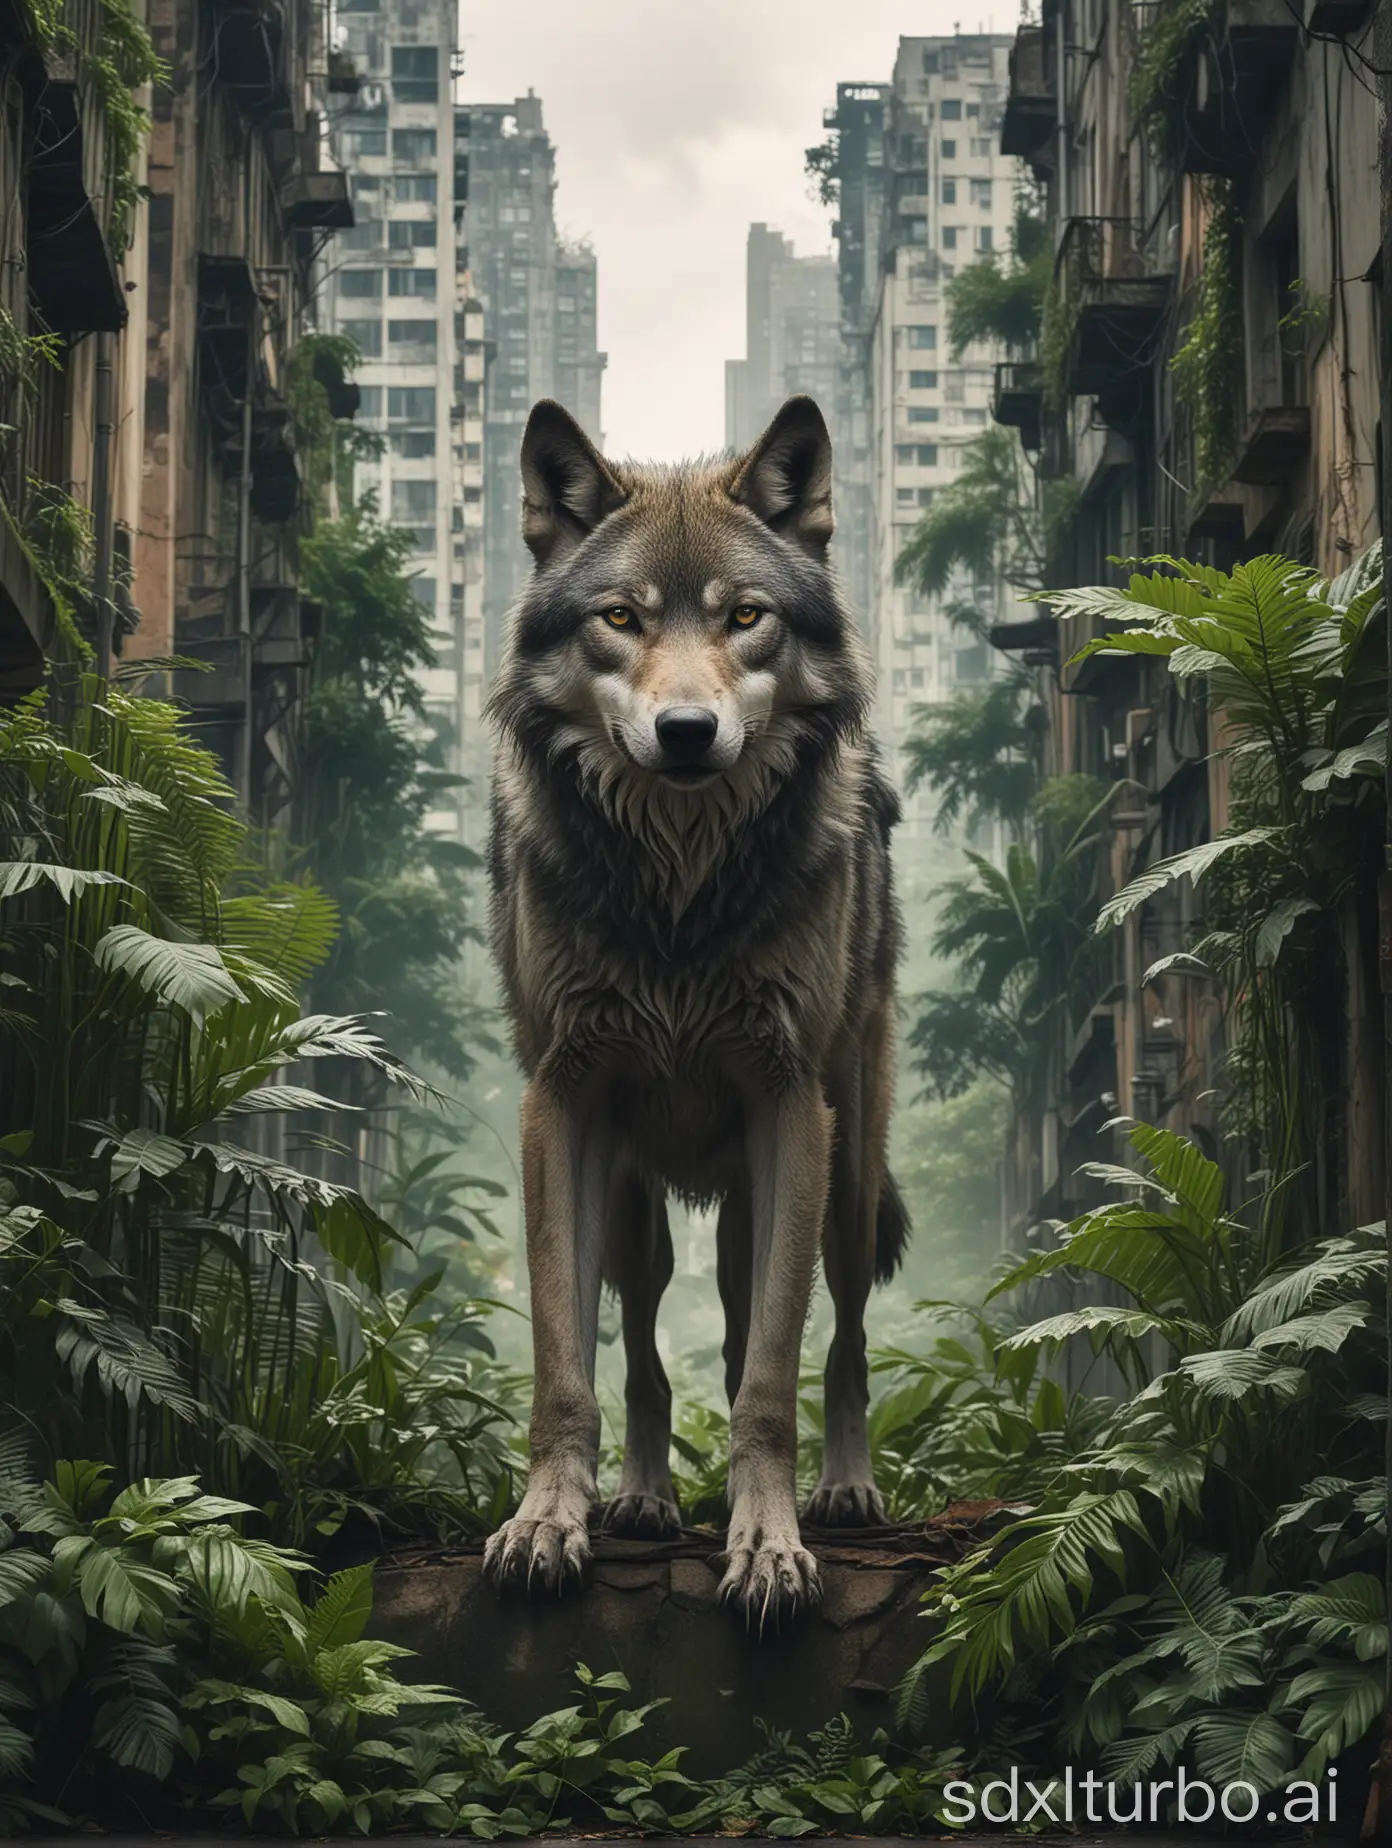 Wolf in urbanerUmgebung die von Dschungel überwuchert ist
